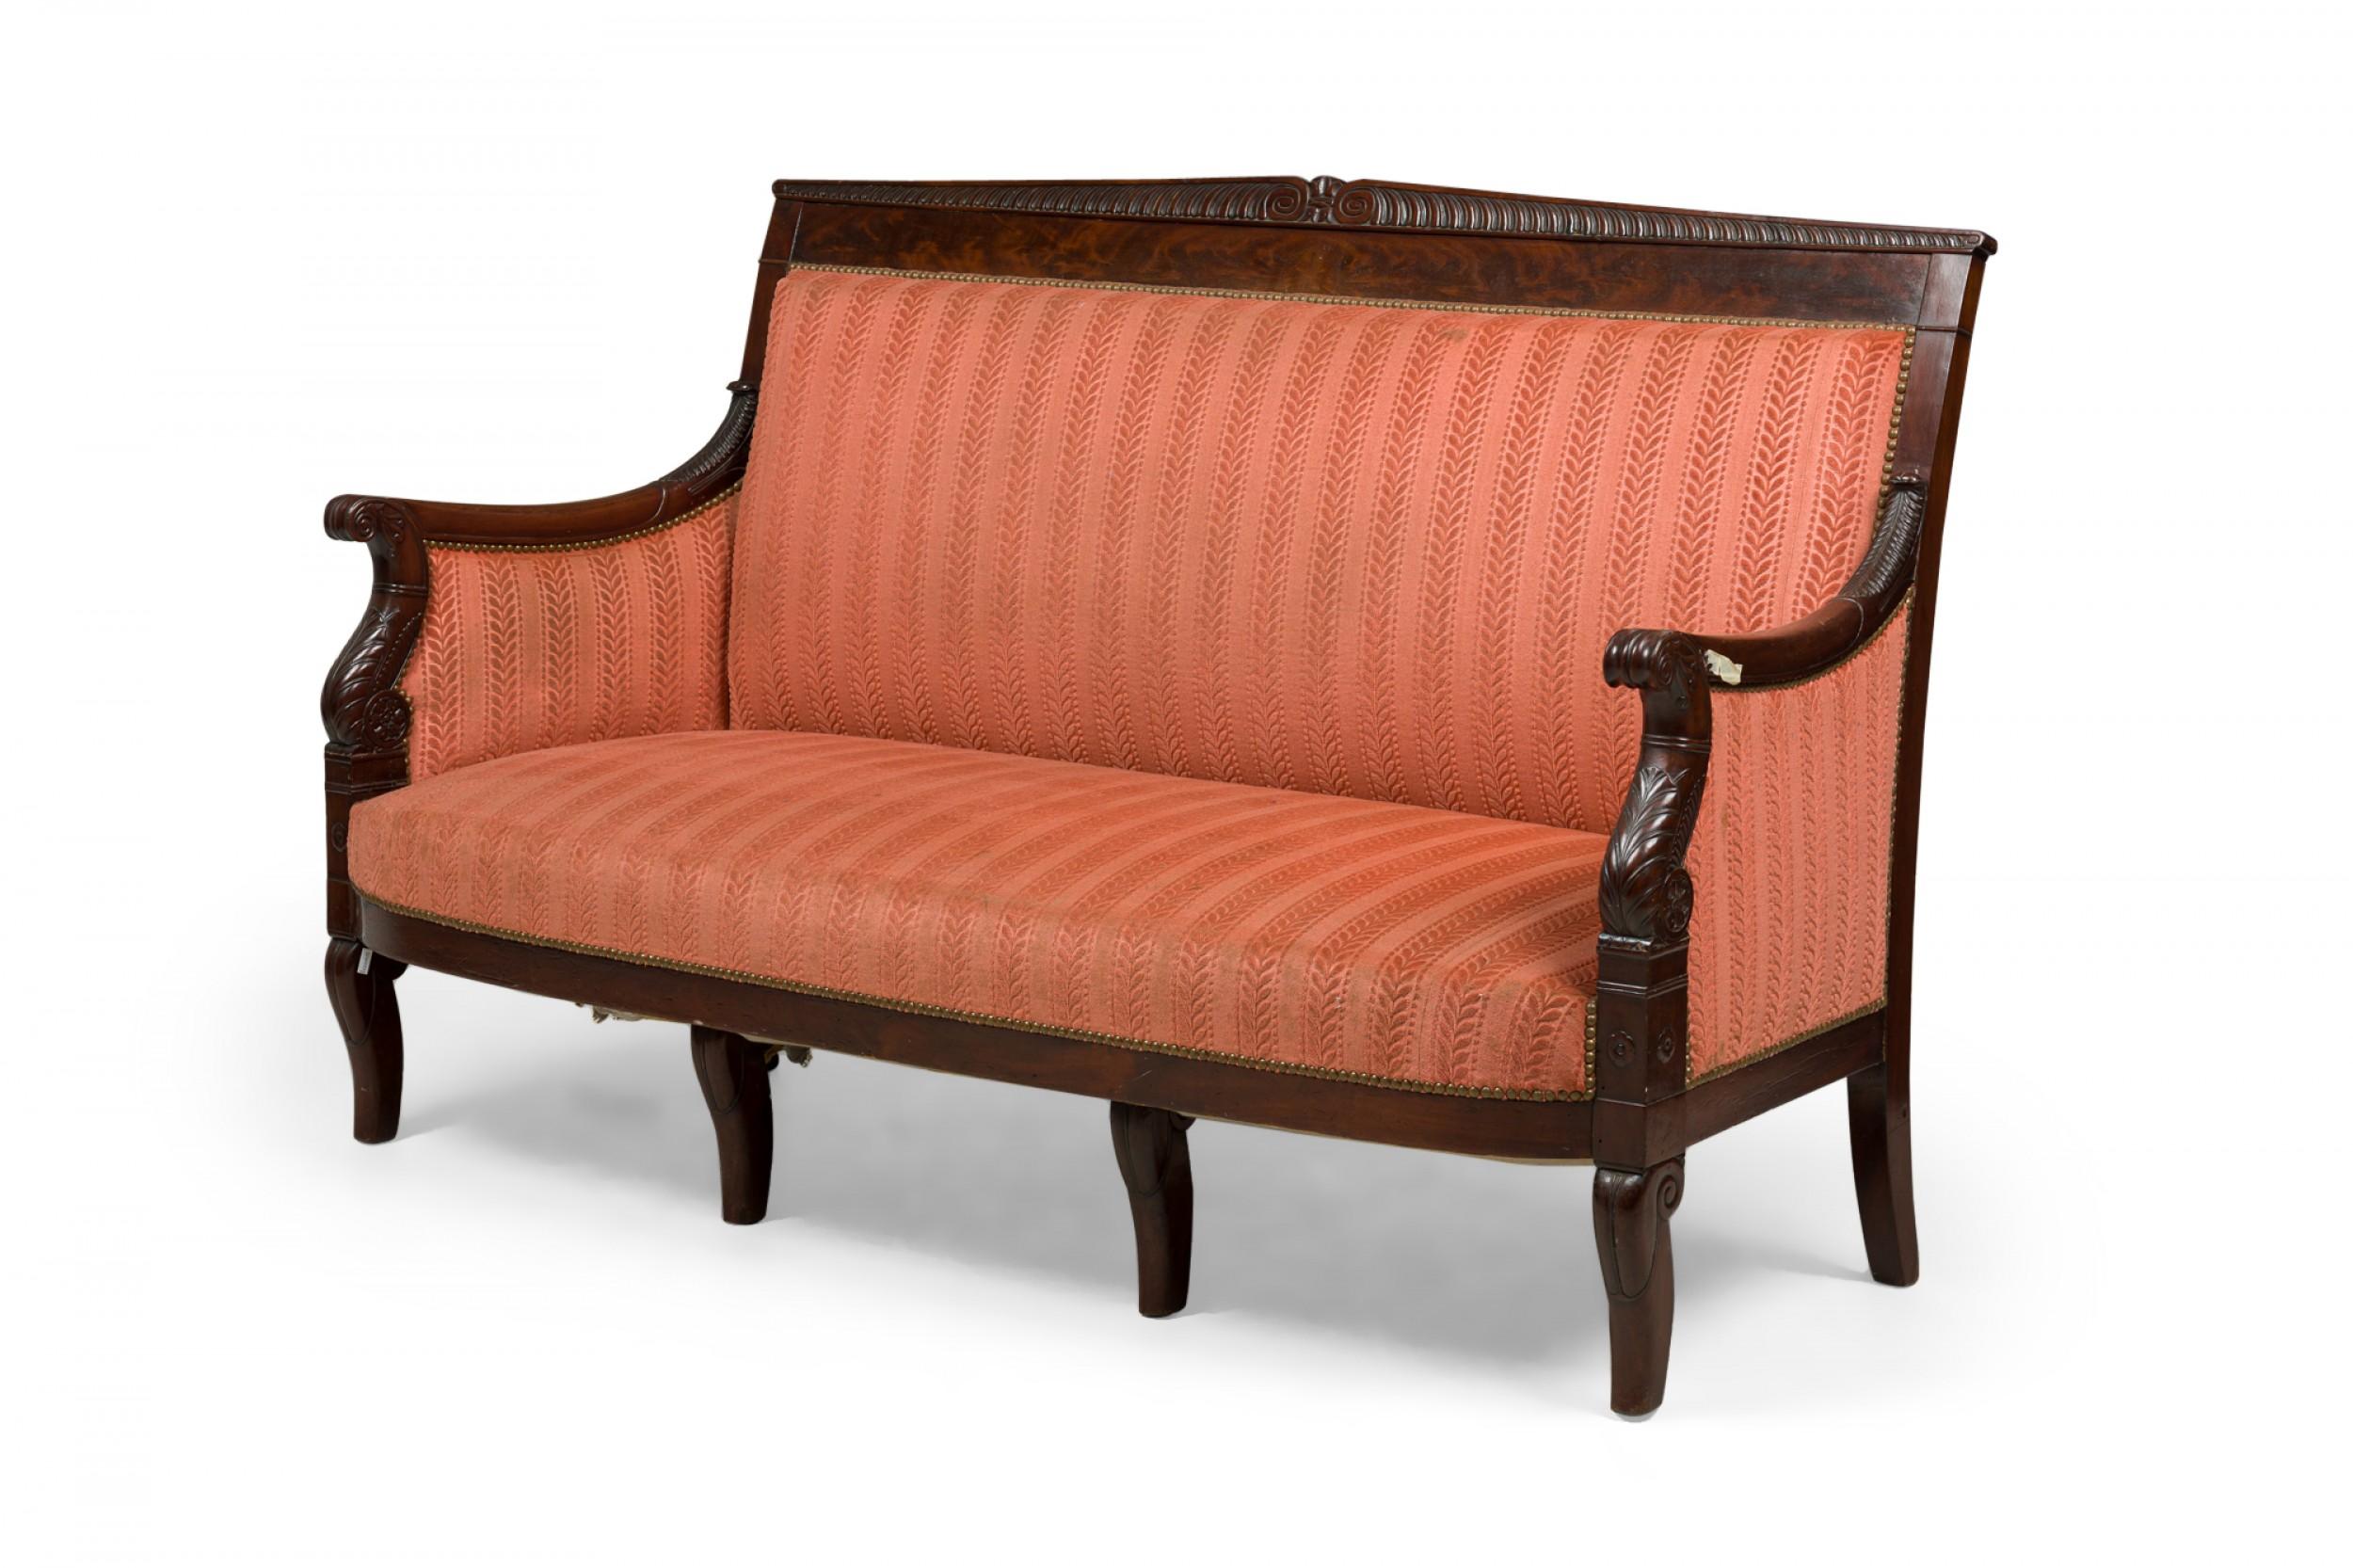 Mahagoni-Sofa im französischen Empire-Stil mit geschnitztem Rahmen und rot-rosa gestreifter Polsterung an Sitz, Arm- und Rückenlehne. (BELLANGER)
